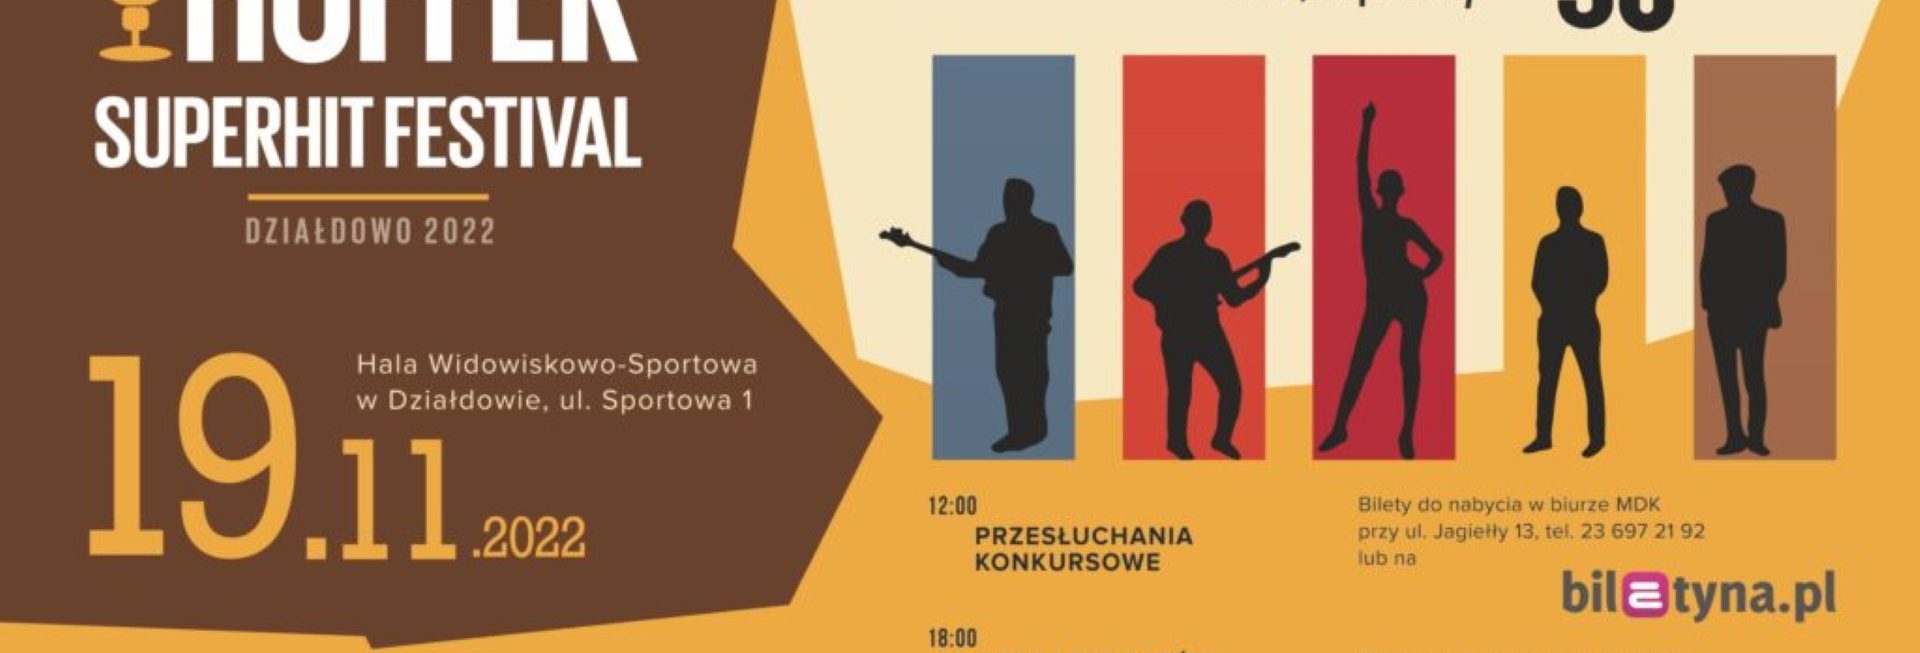 Plakat zapraszający do Działdowa na 14. edycję Ogólnopolskiego Młodzieżowego Festiwalu Piosenki Hoffer Superhit Festival Działdowo 2022.